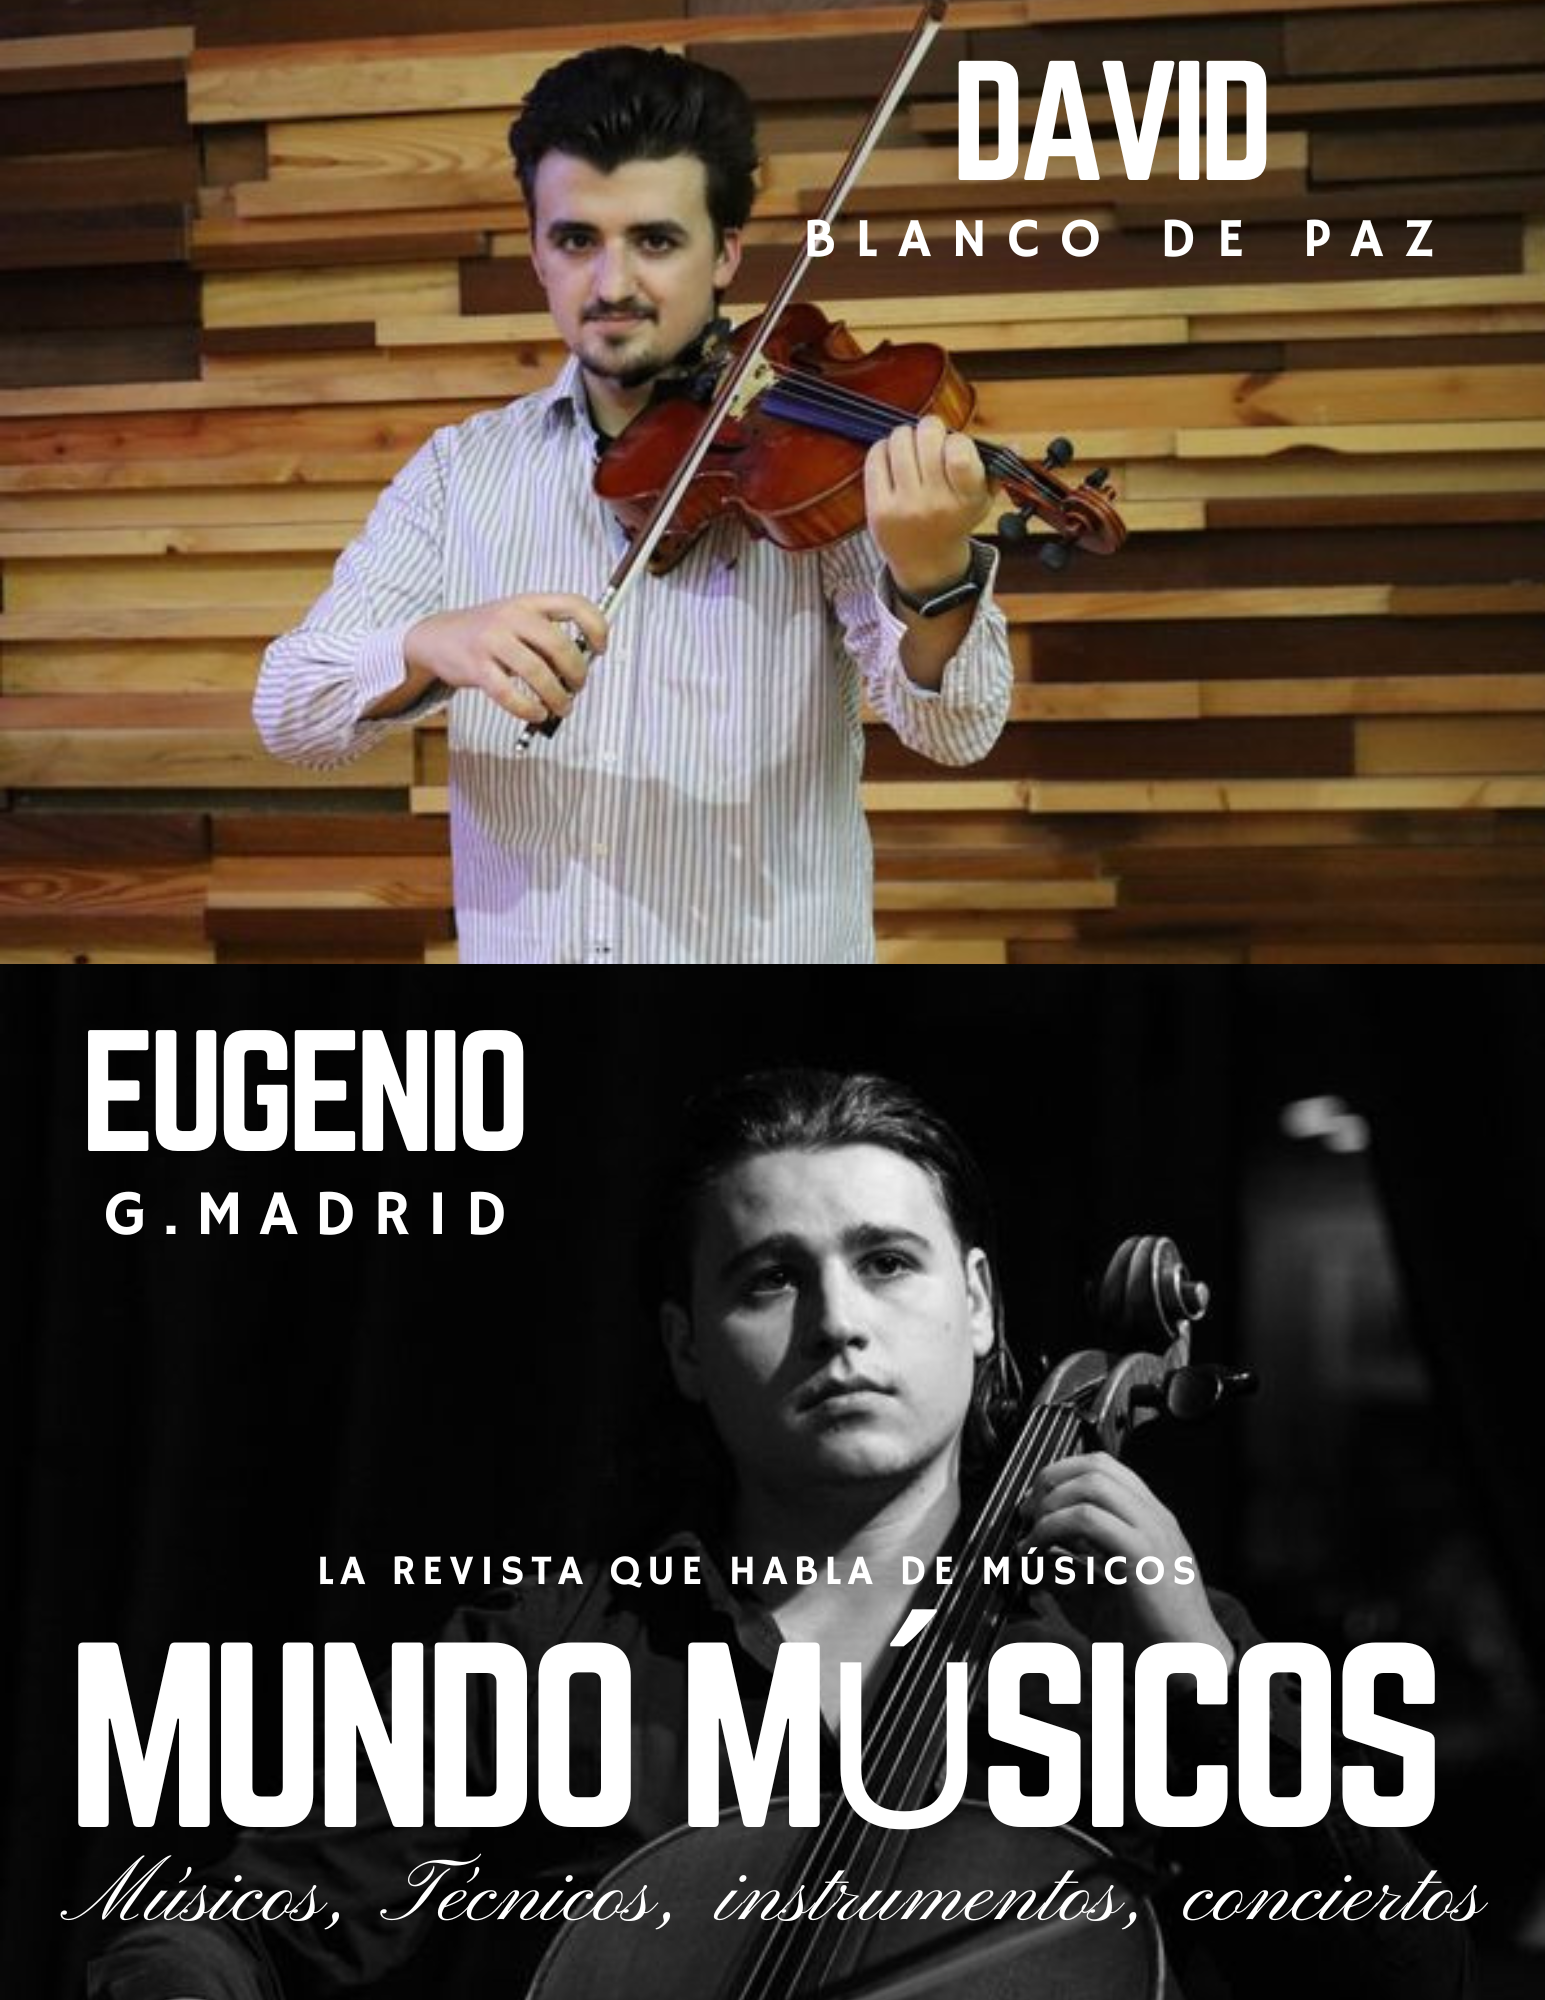 Eugenio G. Madrid y David Blanco de Paz